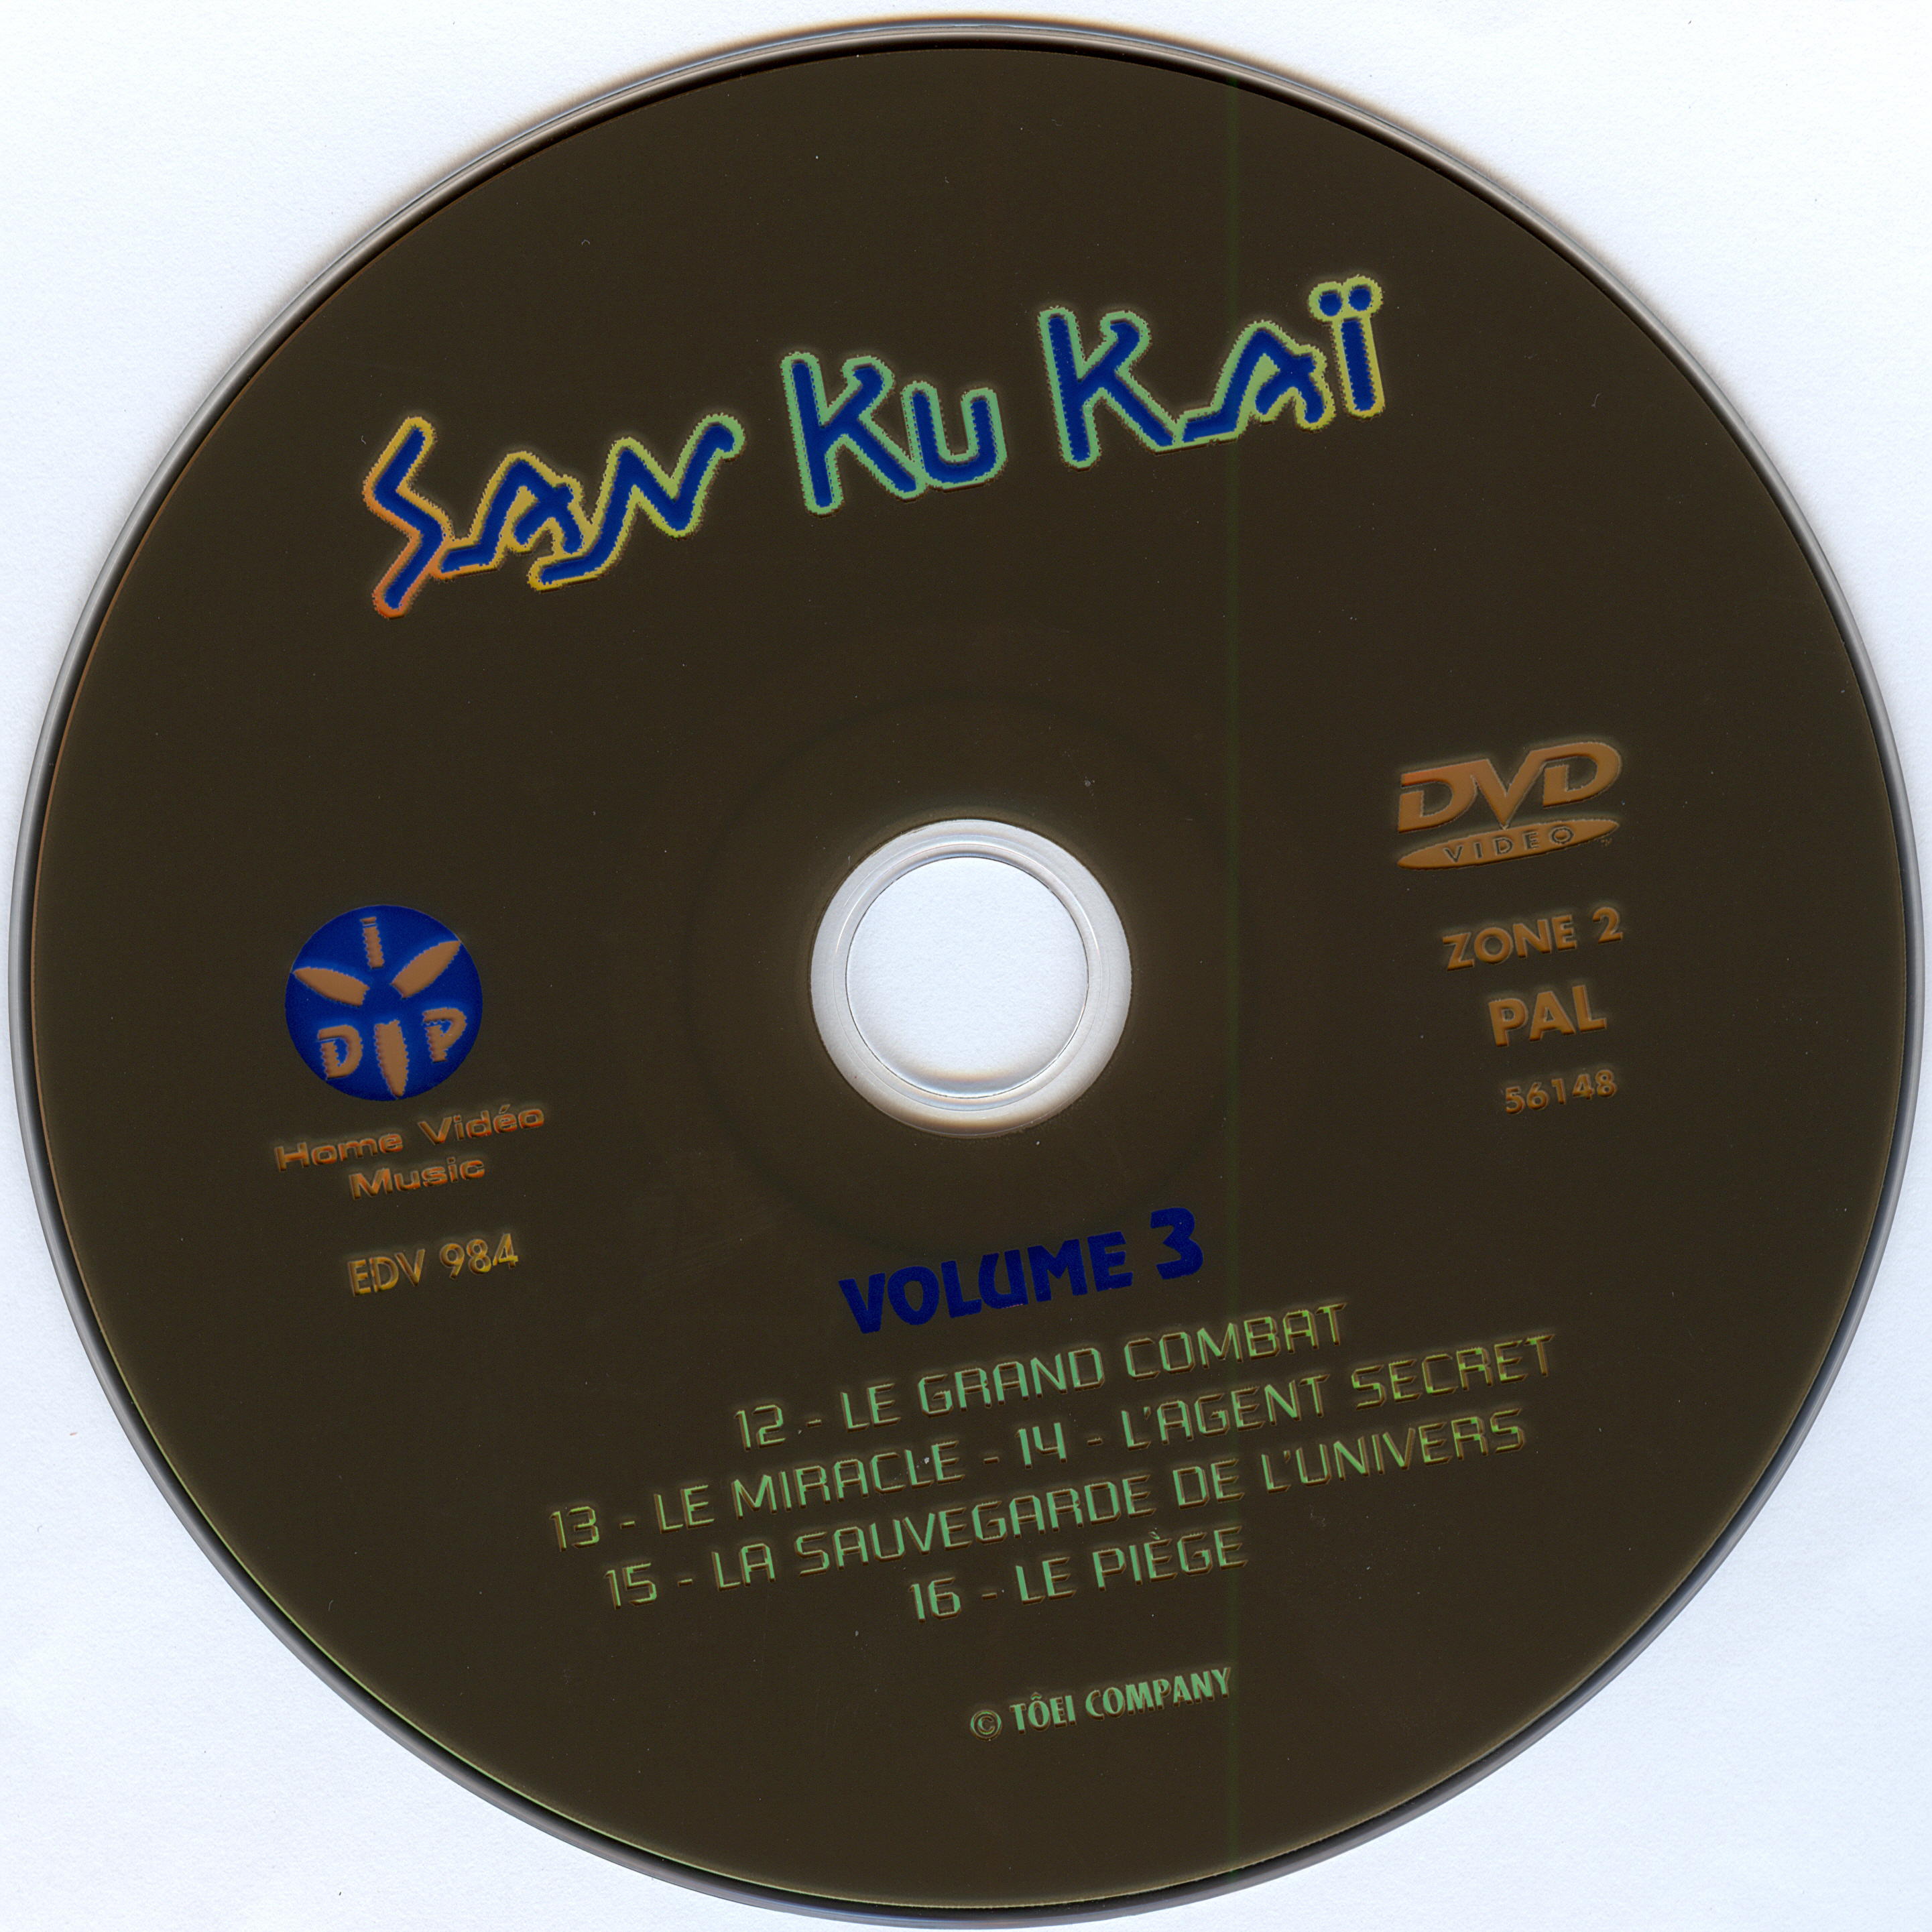 San ku kai DISC 3